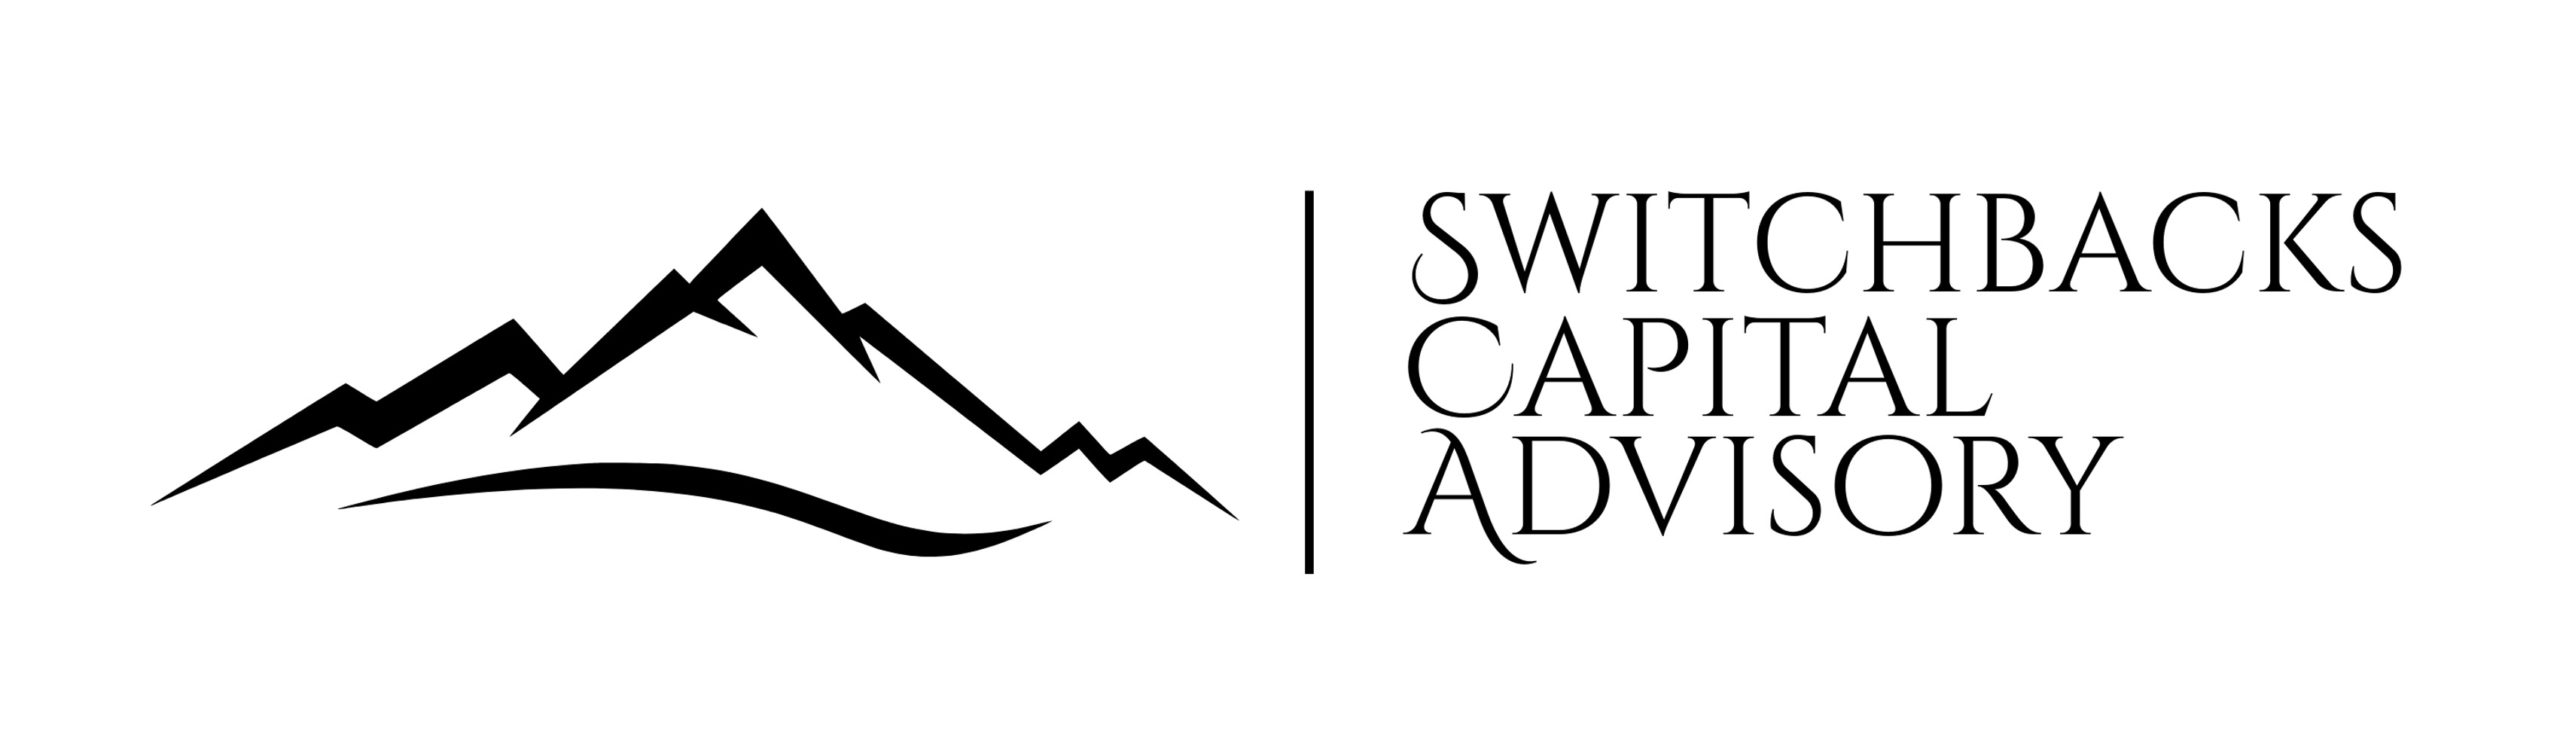 Switchbacks Capital Advisory